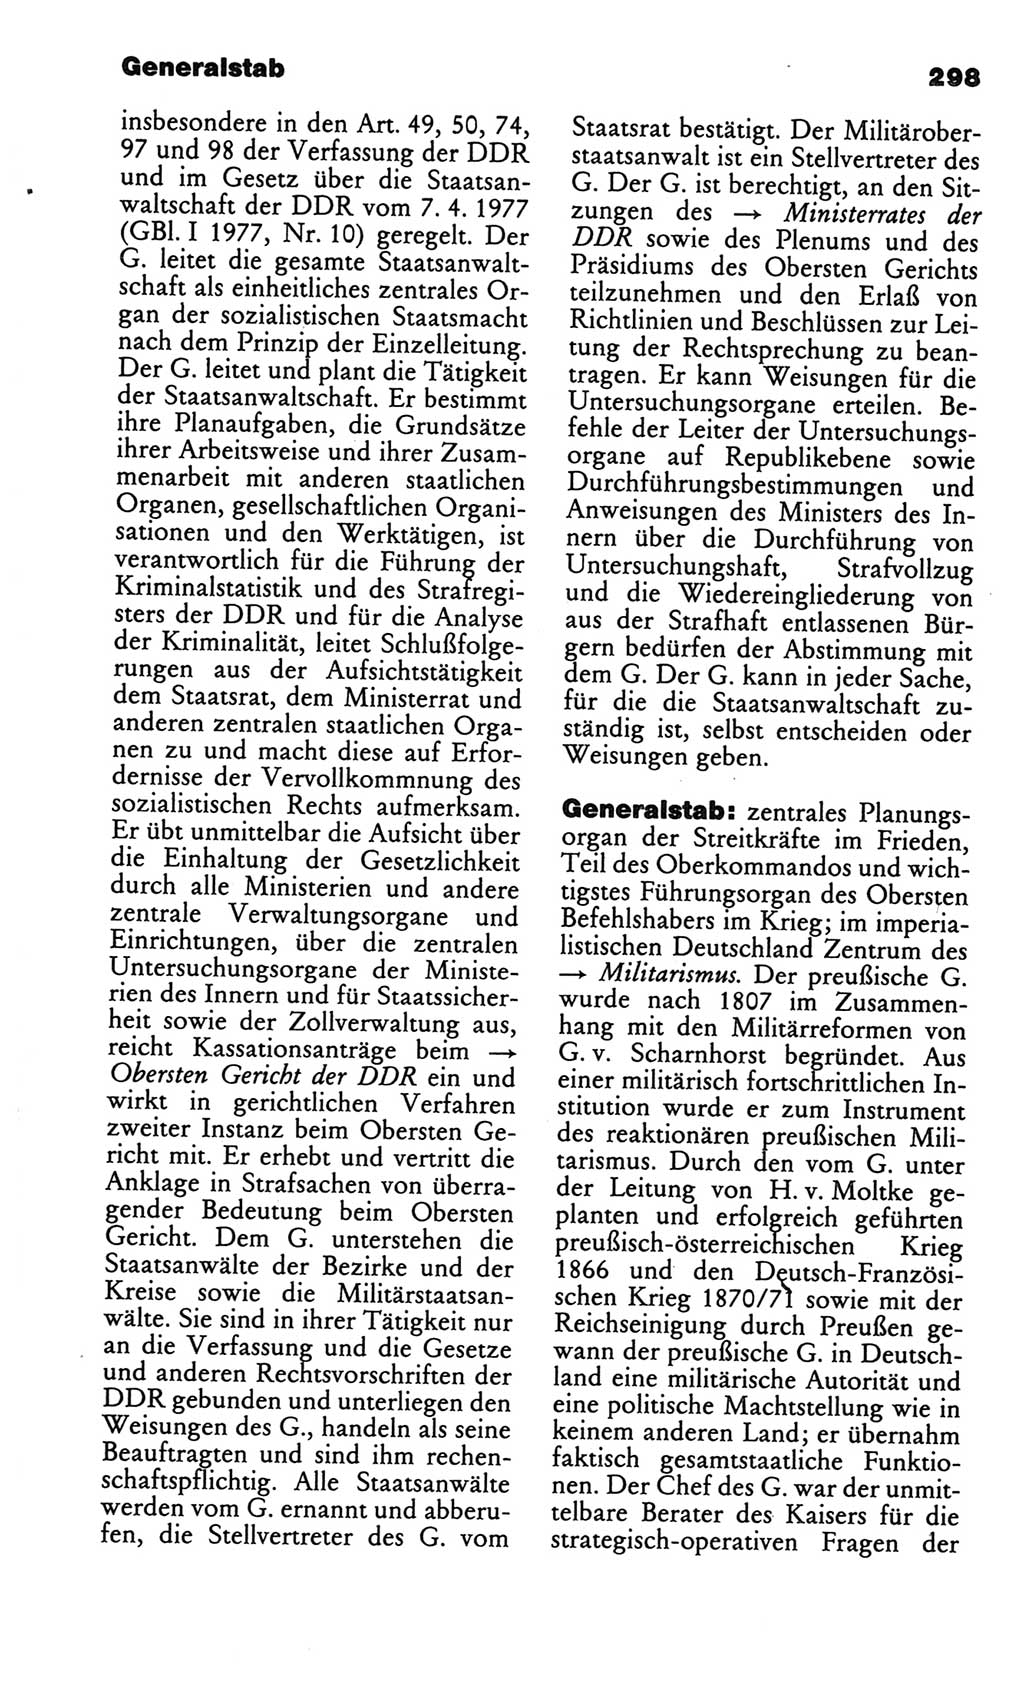 Kleines politisches Wörterbuch [Deutsche Demokratische Republik (DDR)] 1986, Seite 298 (Kl. pol. Wb. DDR 1986, S. 298)